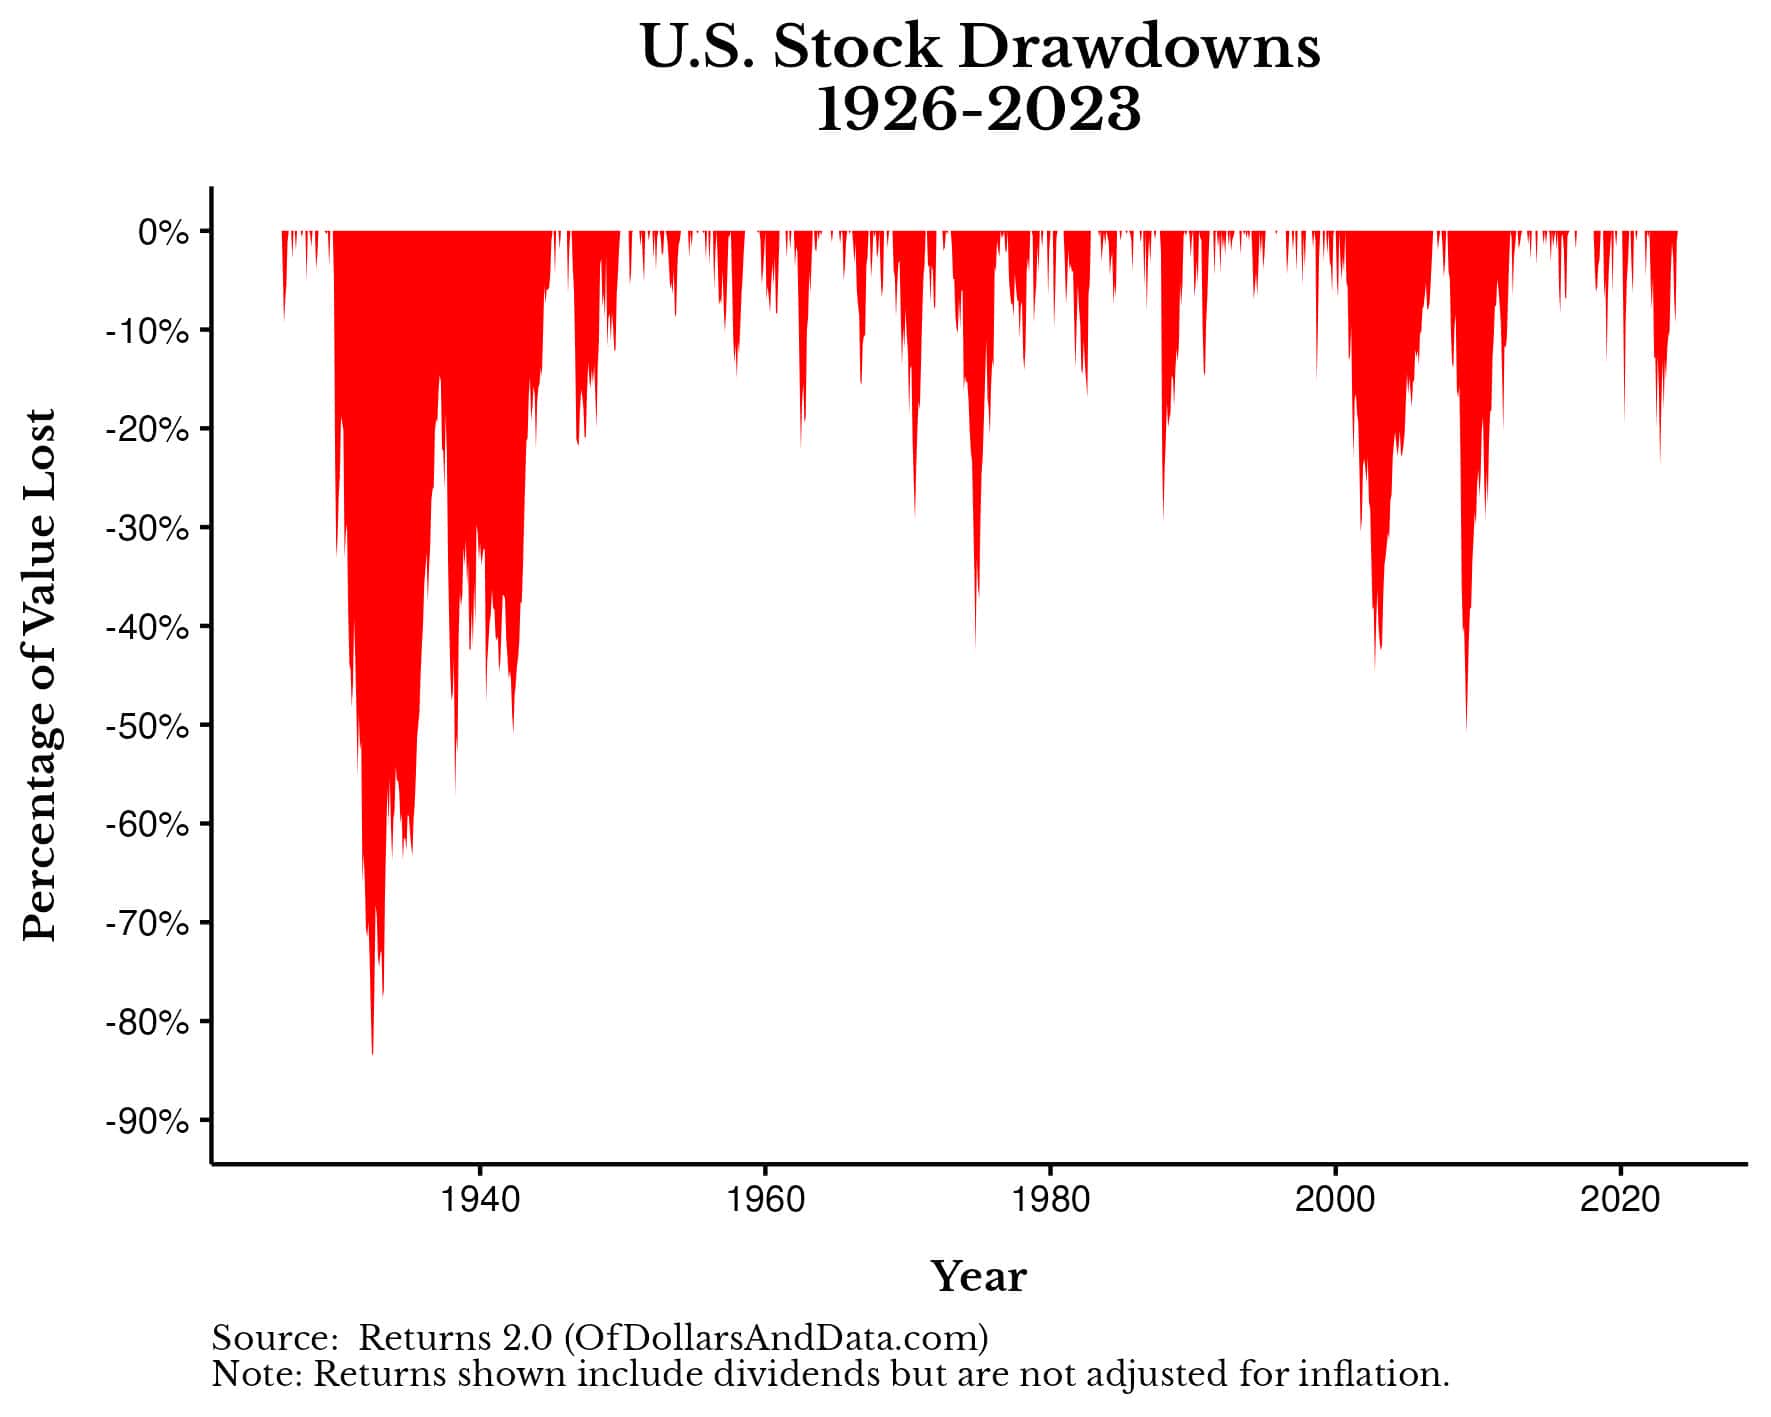 U.S. stock drawdowns from 1926-2023.